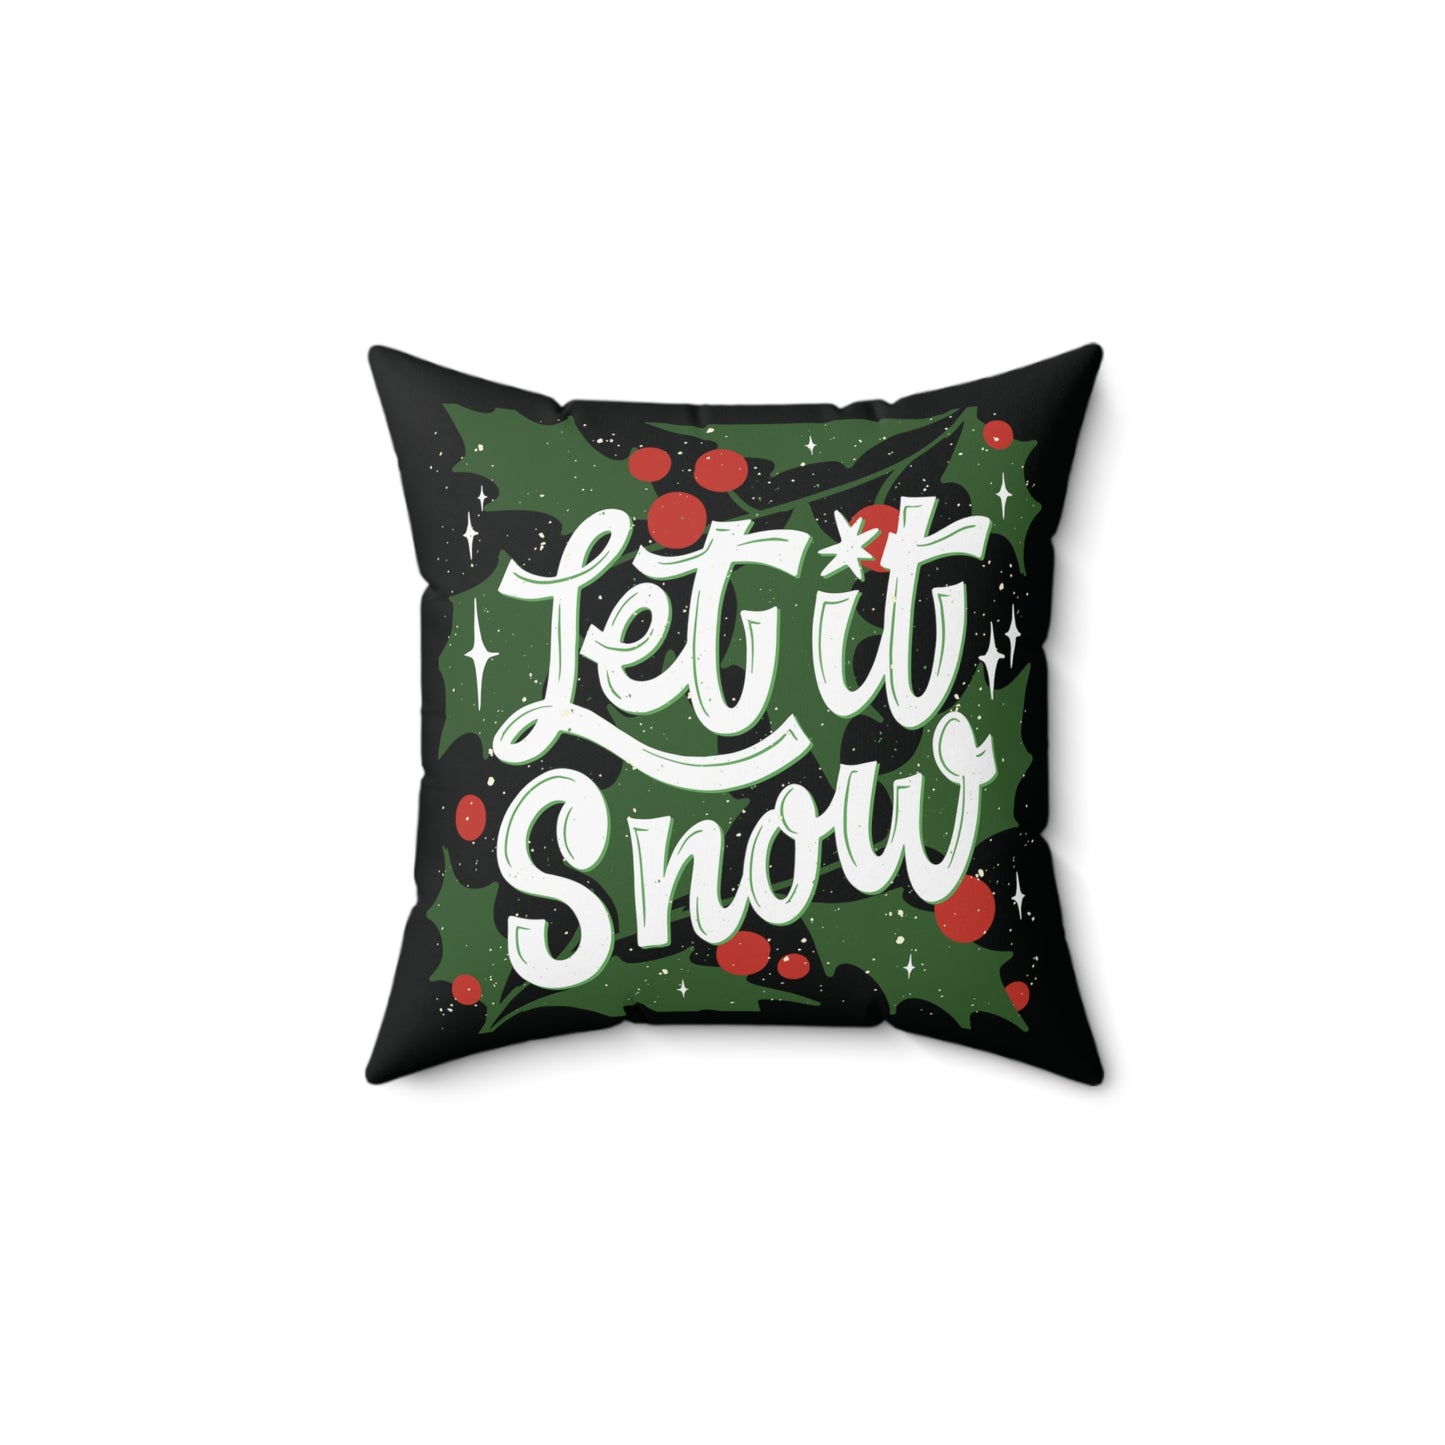 Let it snow festive Square Pillow